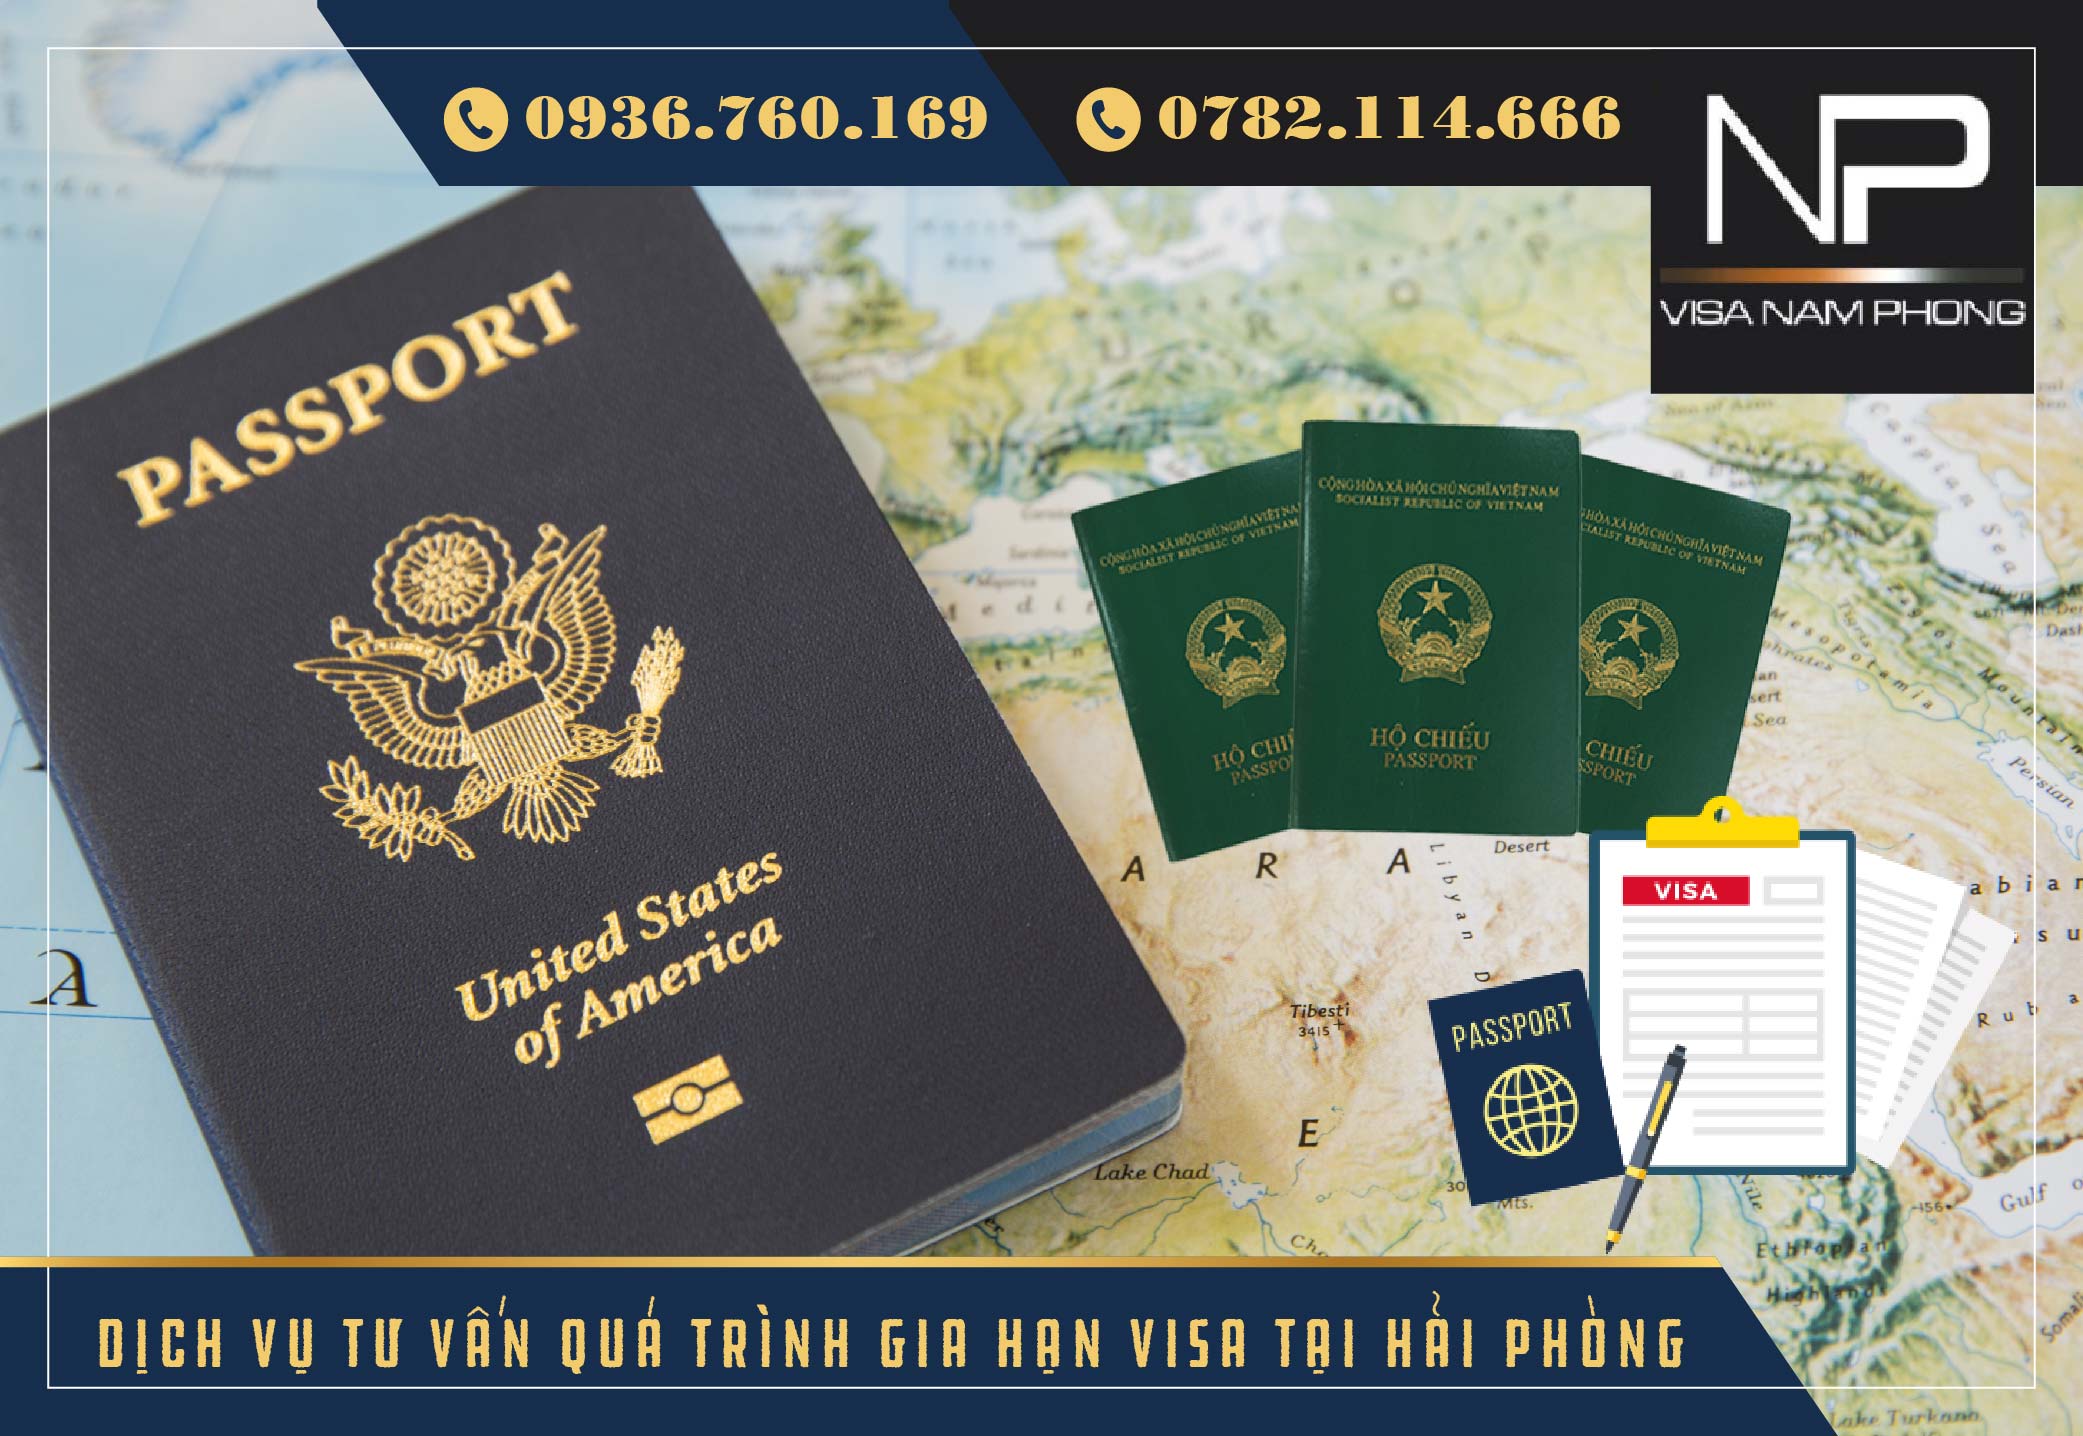 Dịch vụ tư vấn quá trình gia hạn visa tại hải phòng